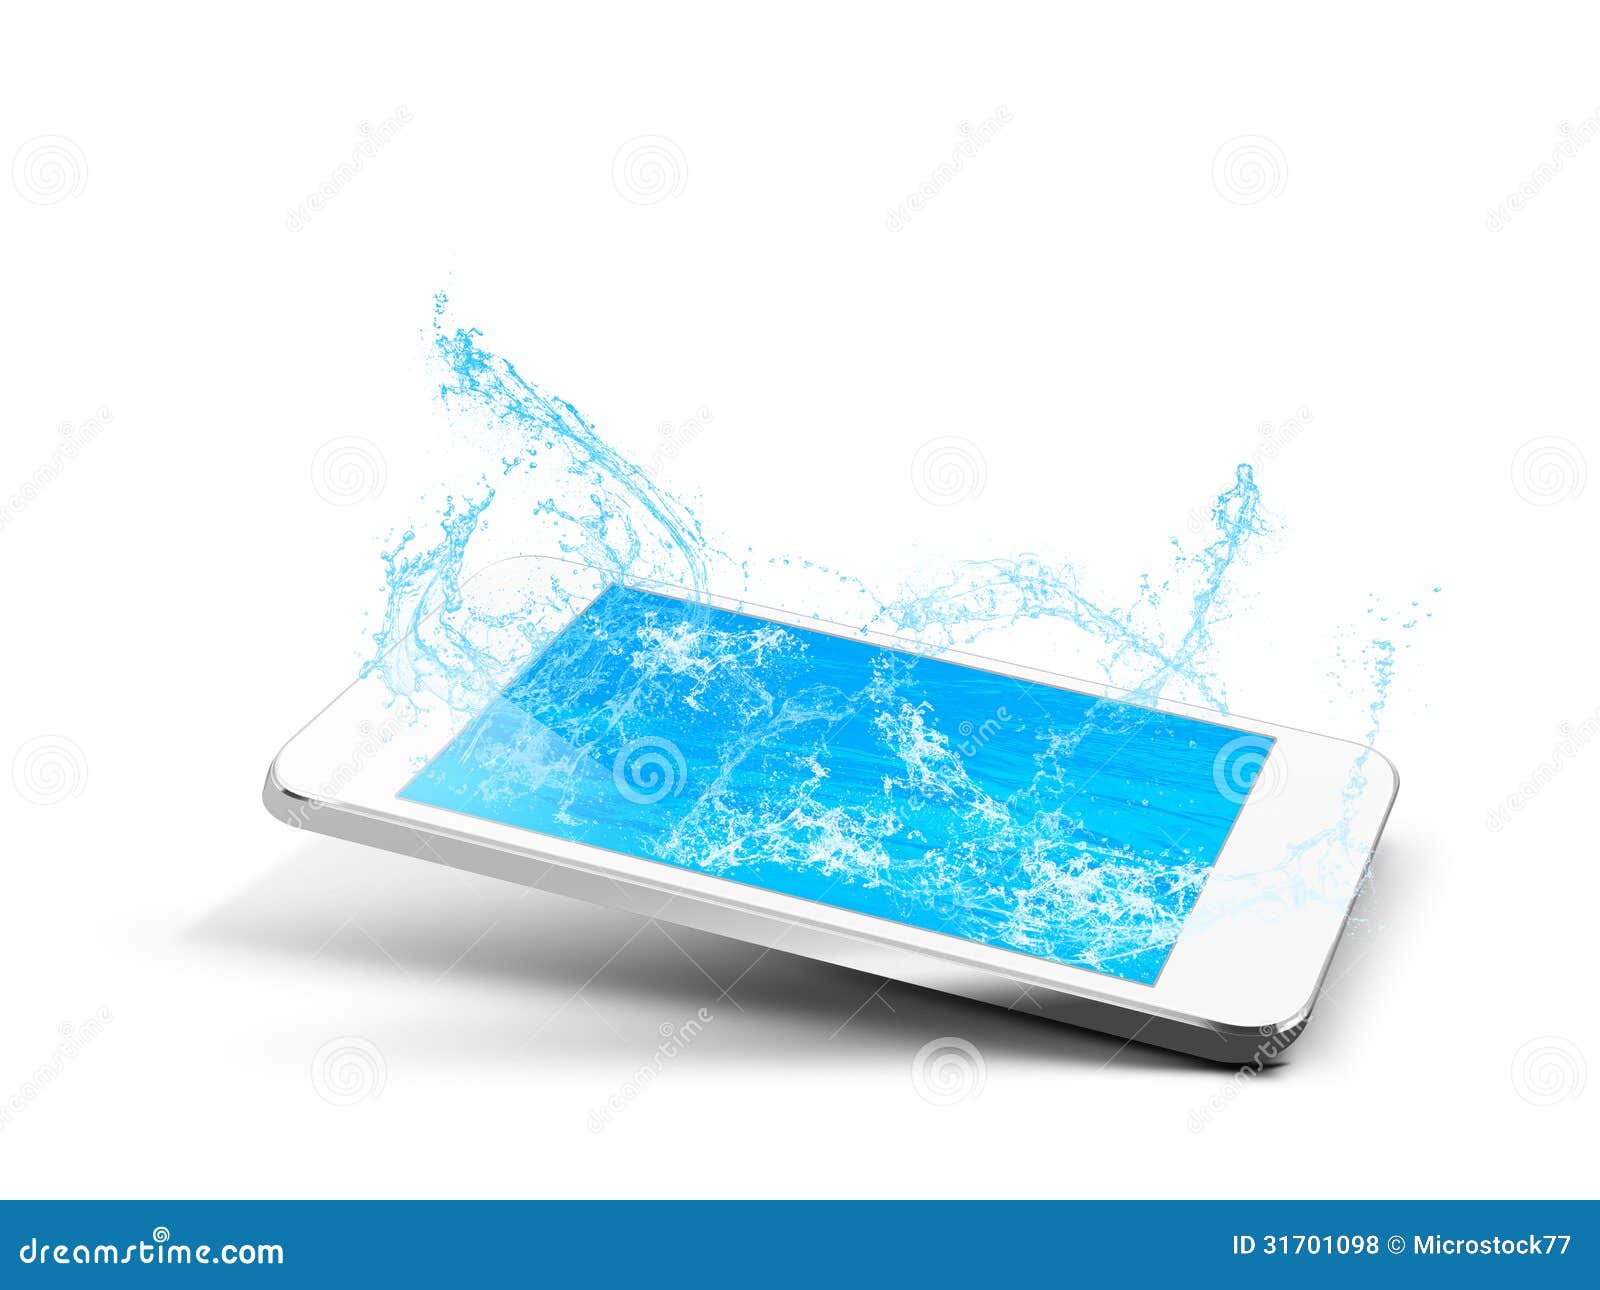 Данные по воде телефон. Смартфон в воде. Фон для телефона вода. Телефон под водой. Рука с телефоном из воды.